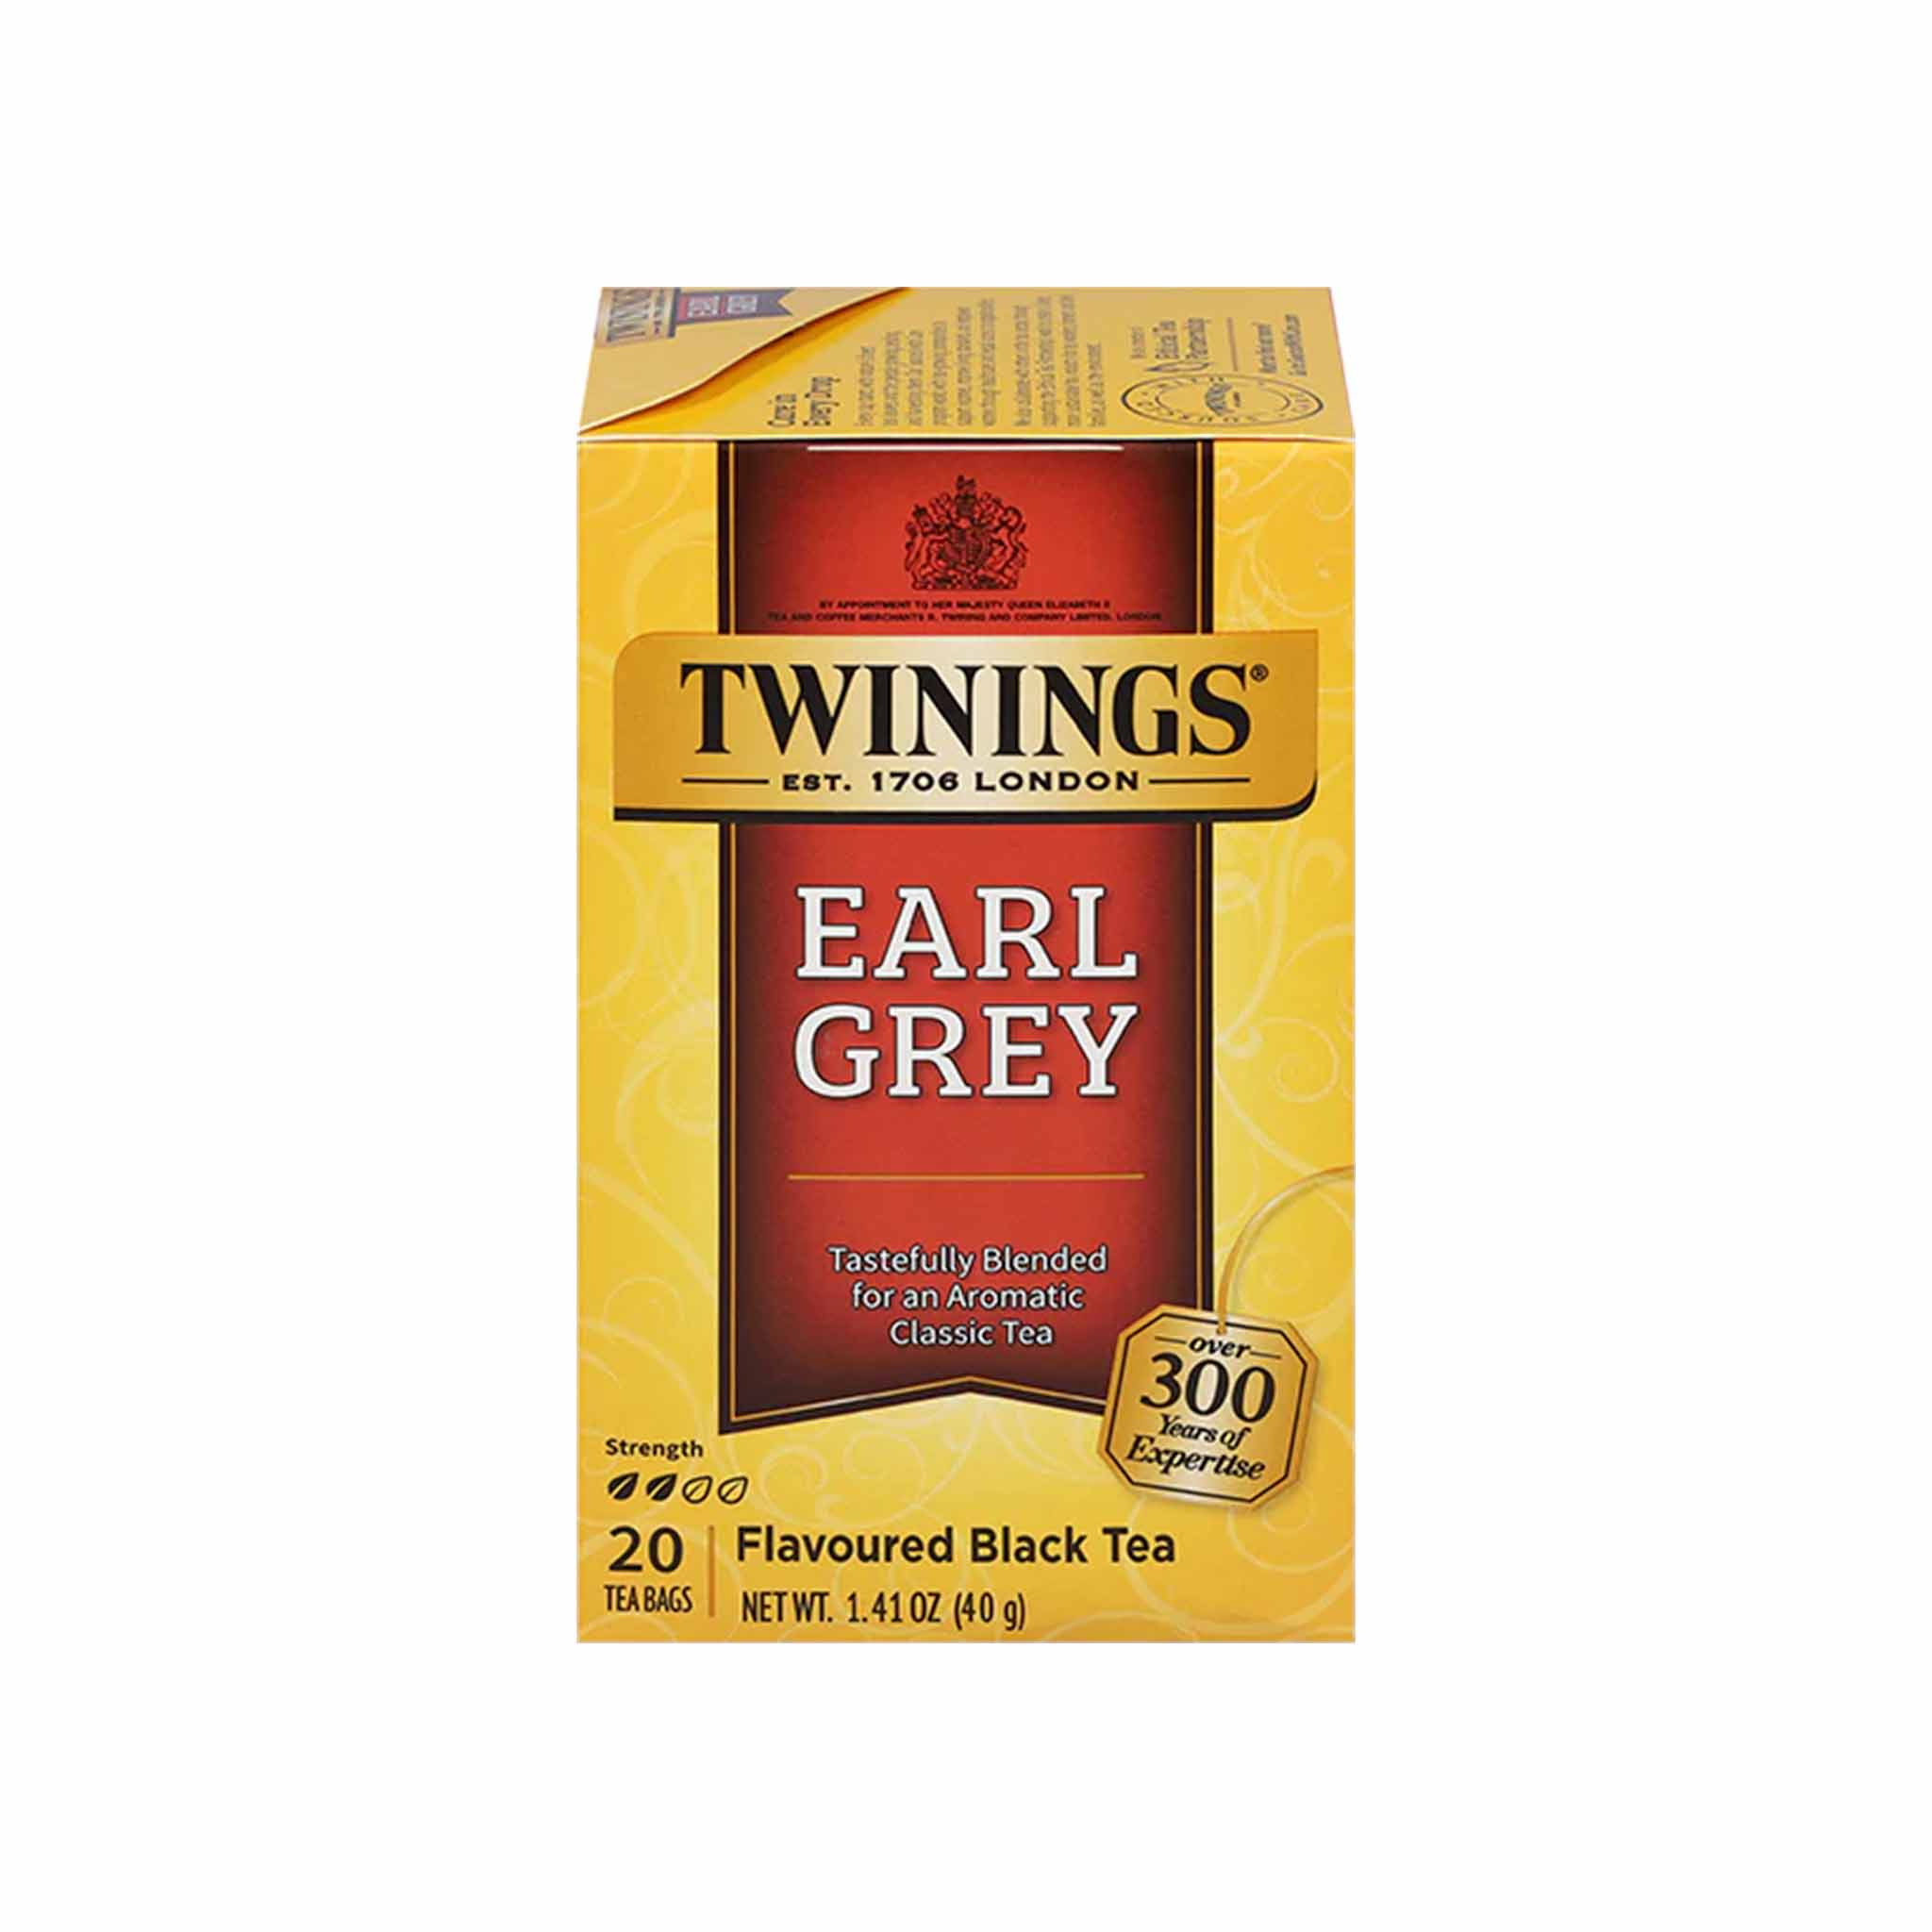 TWININGS EARL GREY TEA 1.41oz